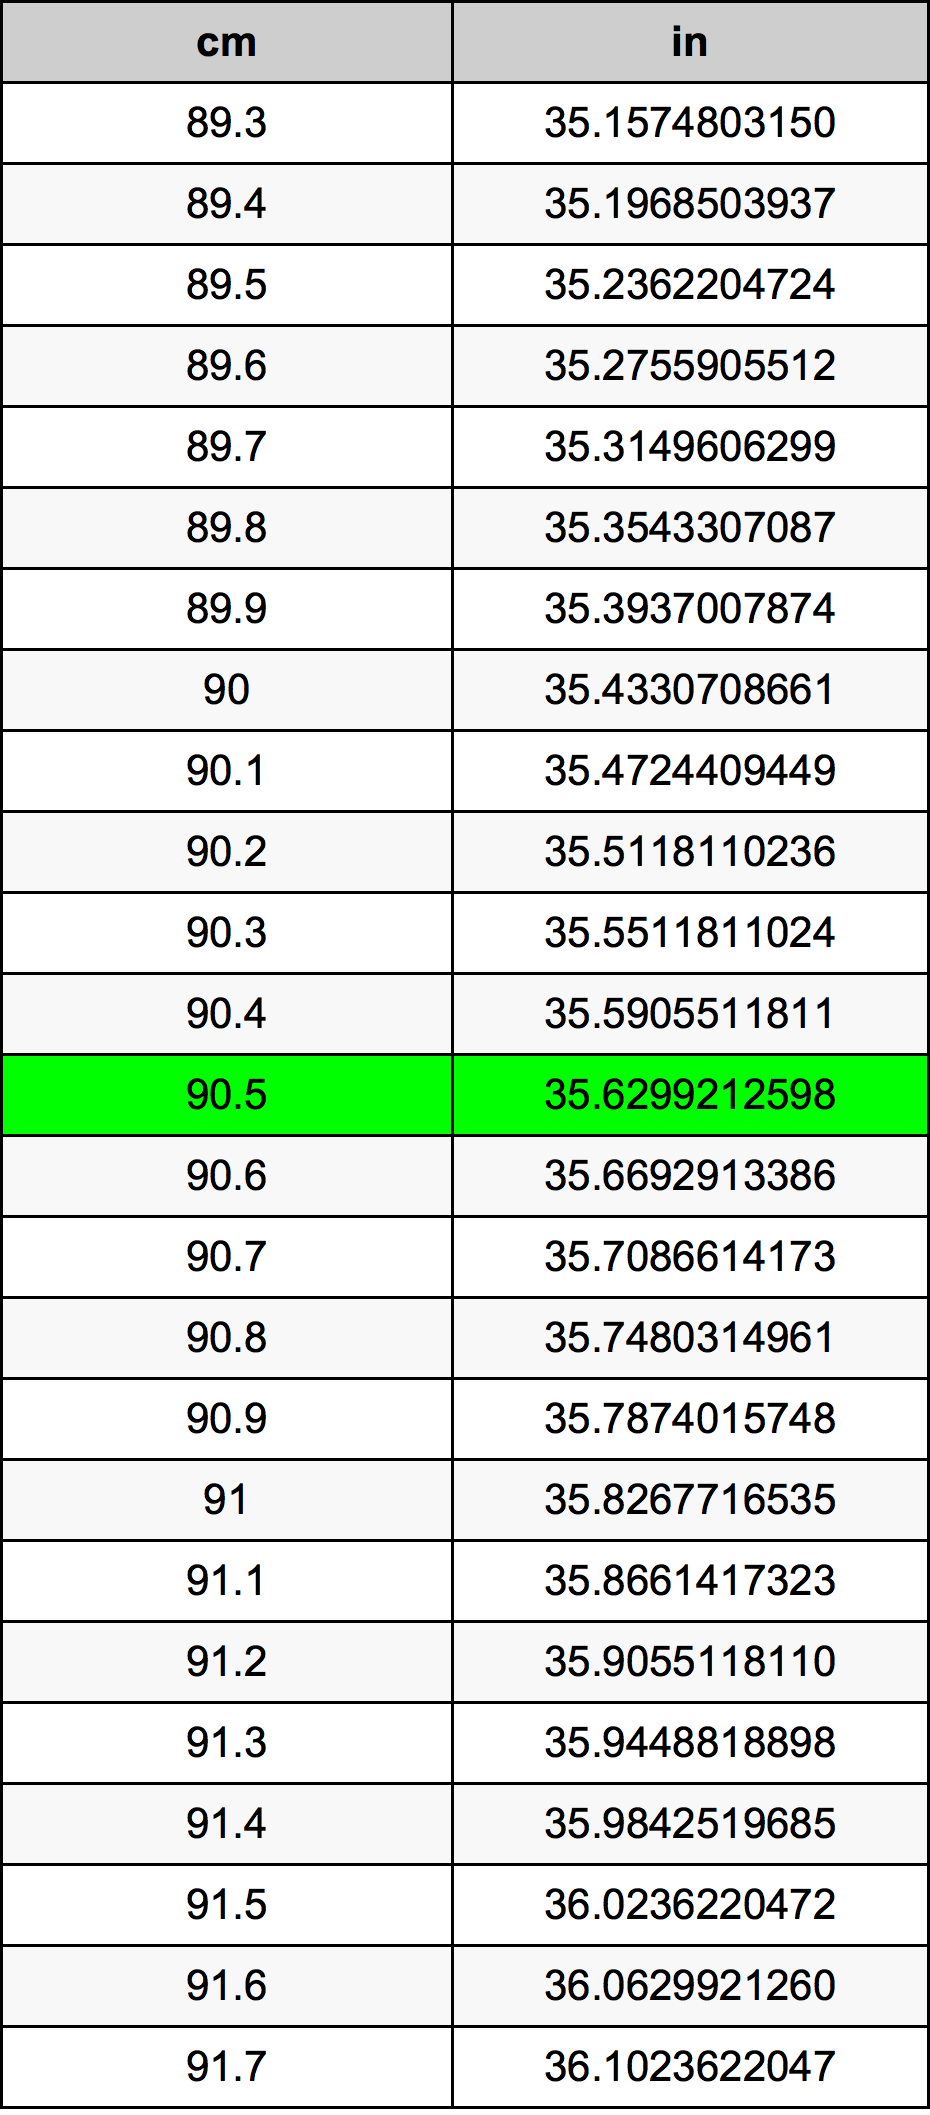 90.5 Centiméter átszámítási táblázat